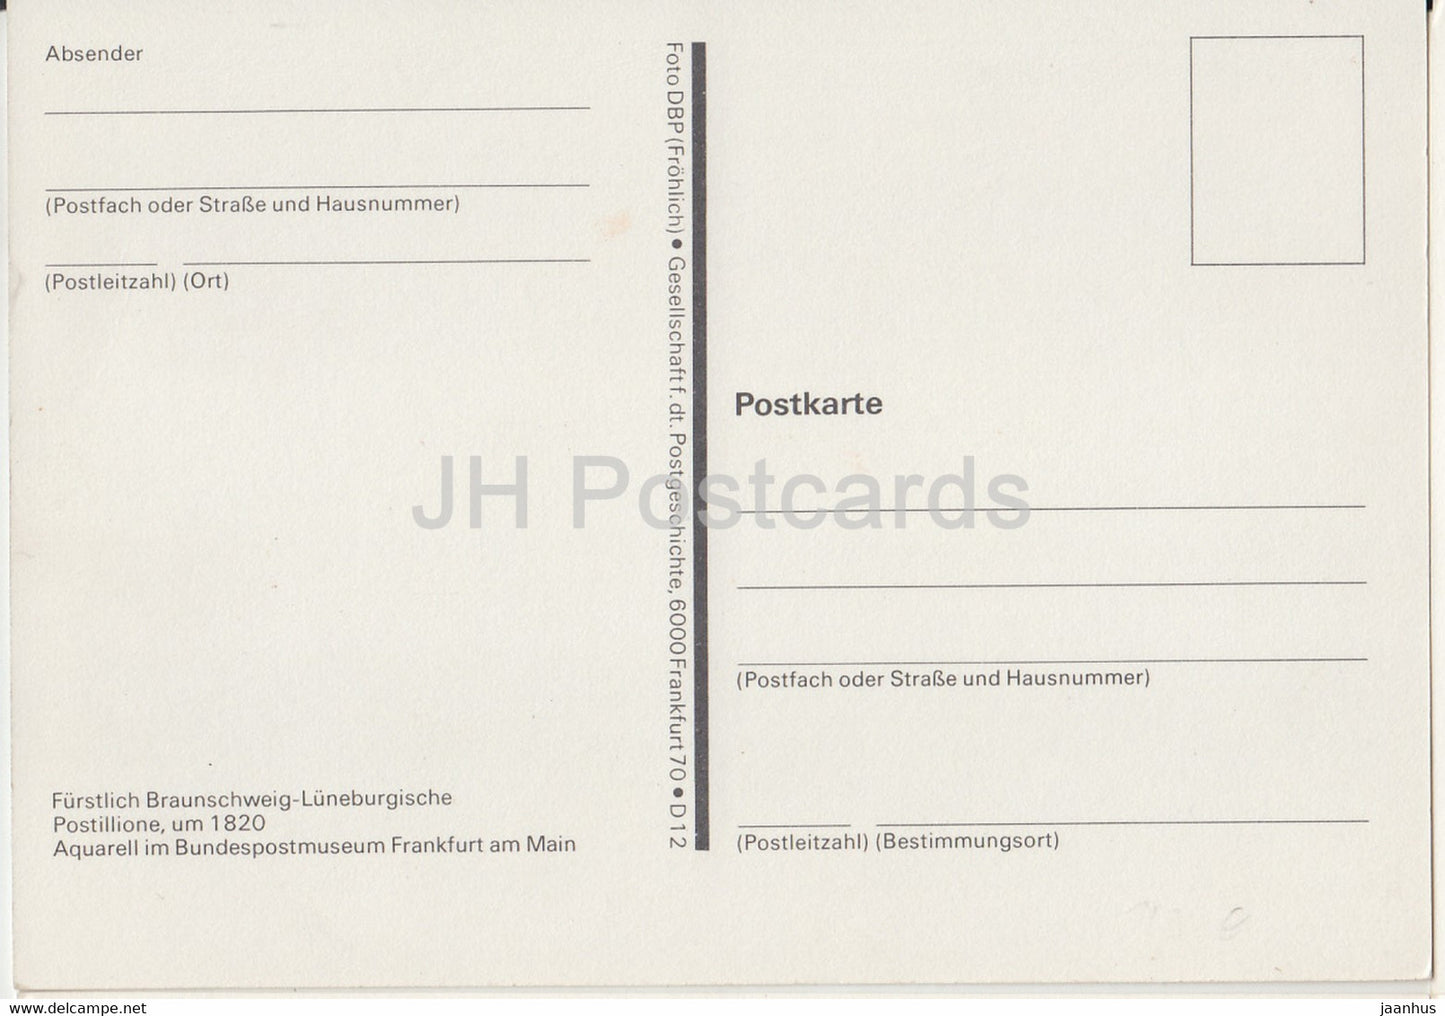 Fürstlich Braunschweig Lüneburgische Postillione - Postboten - Postdienst - Deutschland - unbenutzt